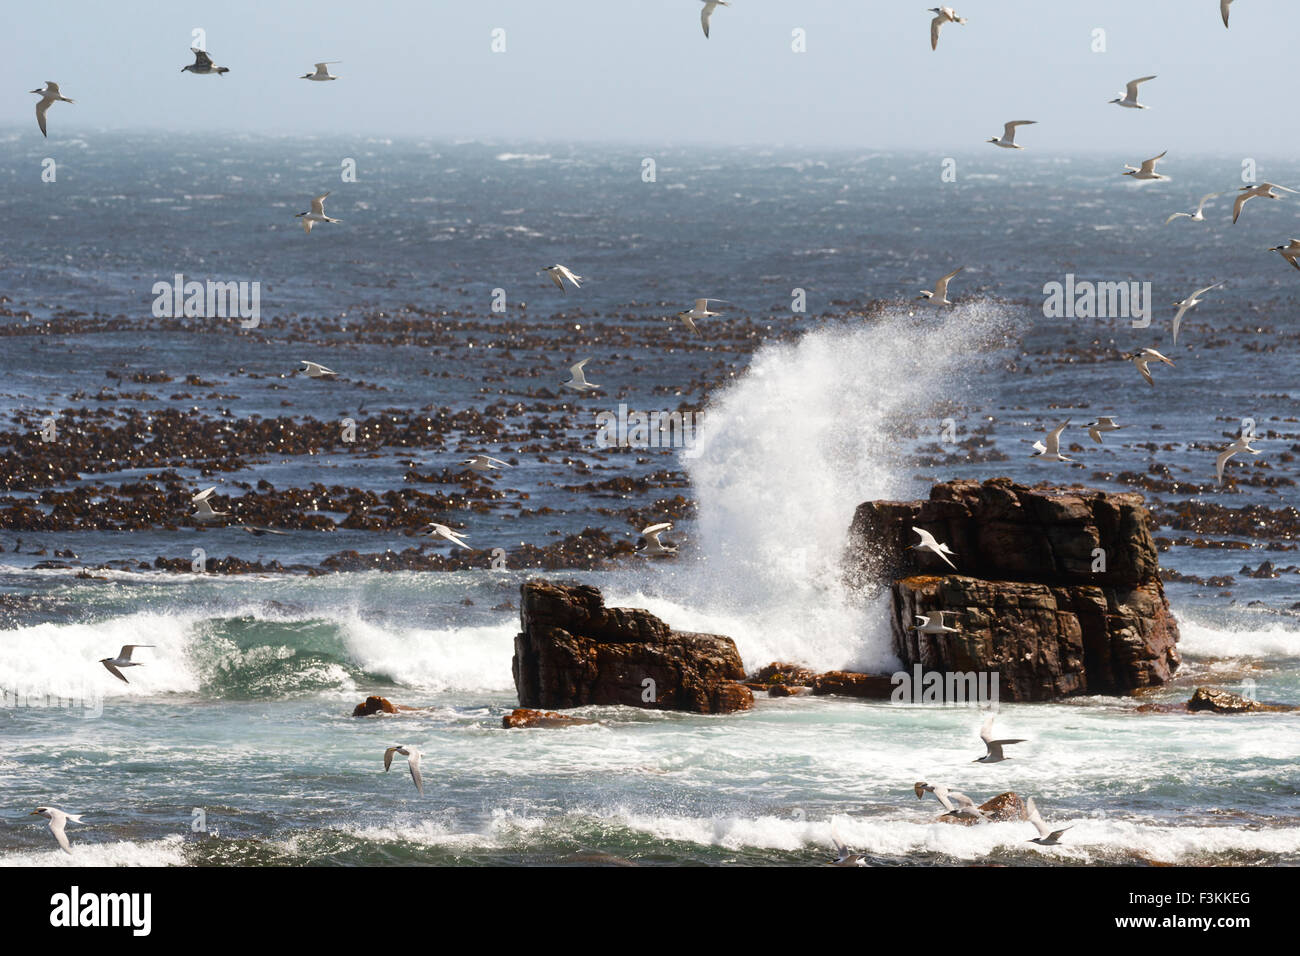 Gli uccelli e le onde del mare presso il Capo di Buona Speranza, punta meridionale dell'Africa, Table Mountain National Park, Simonstown, Sud Afric Foto Stock